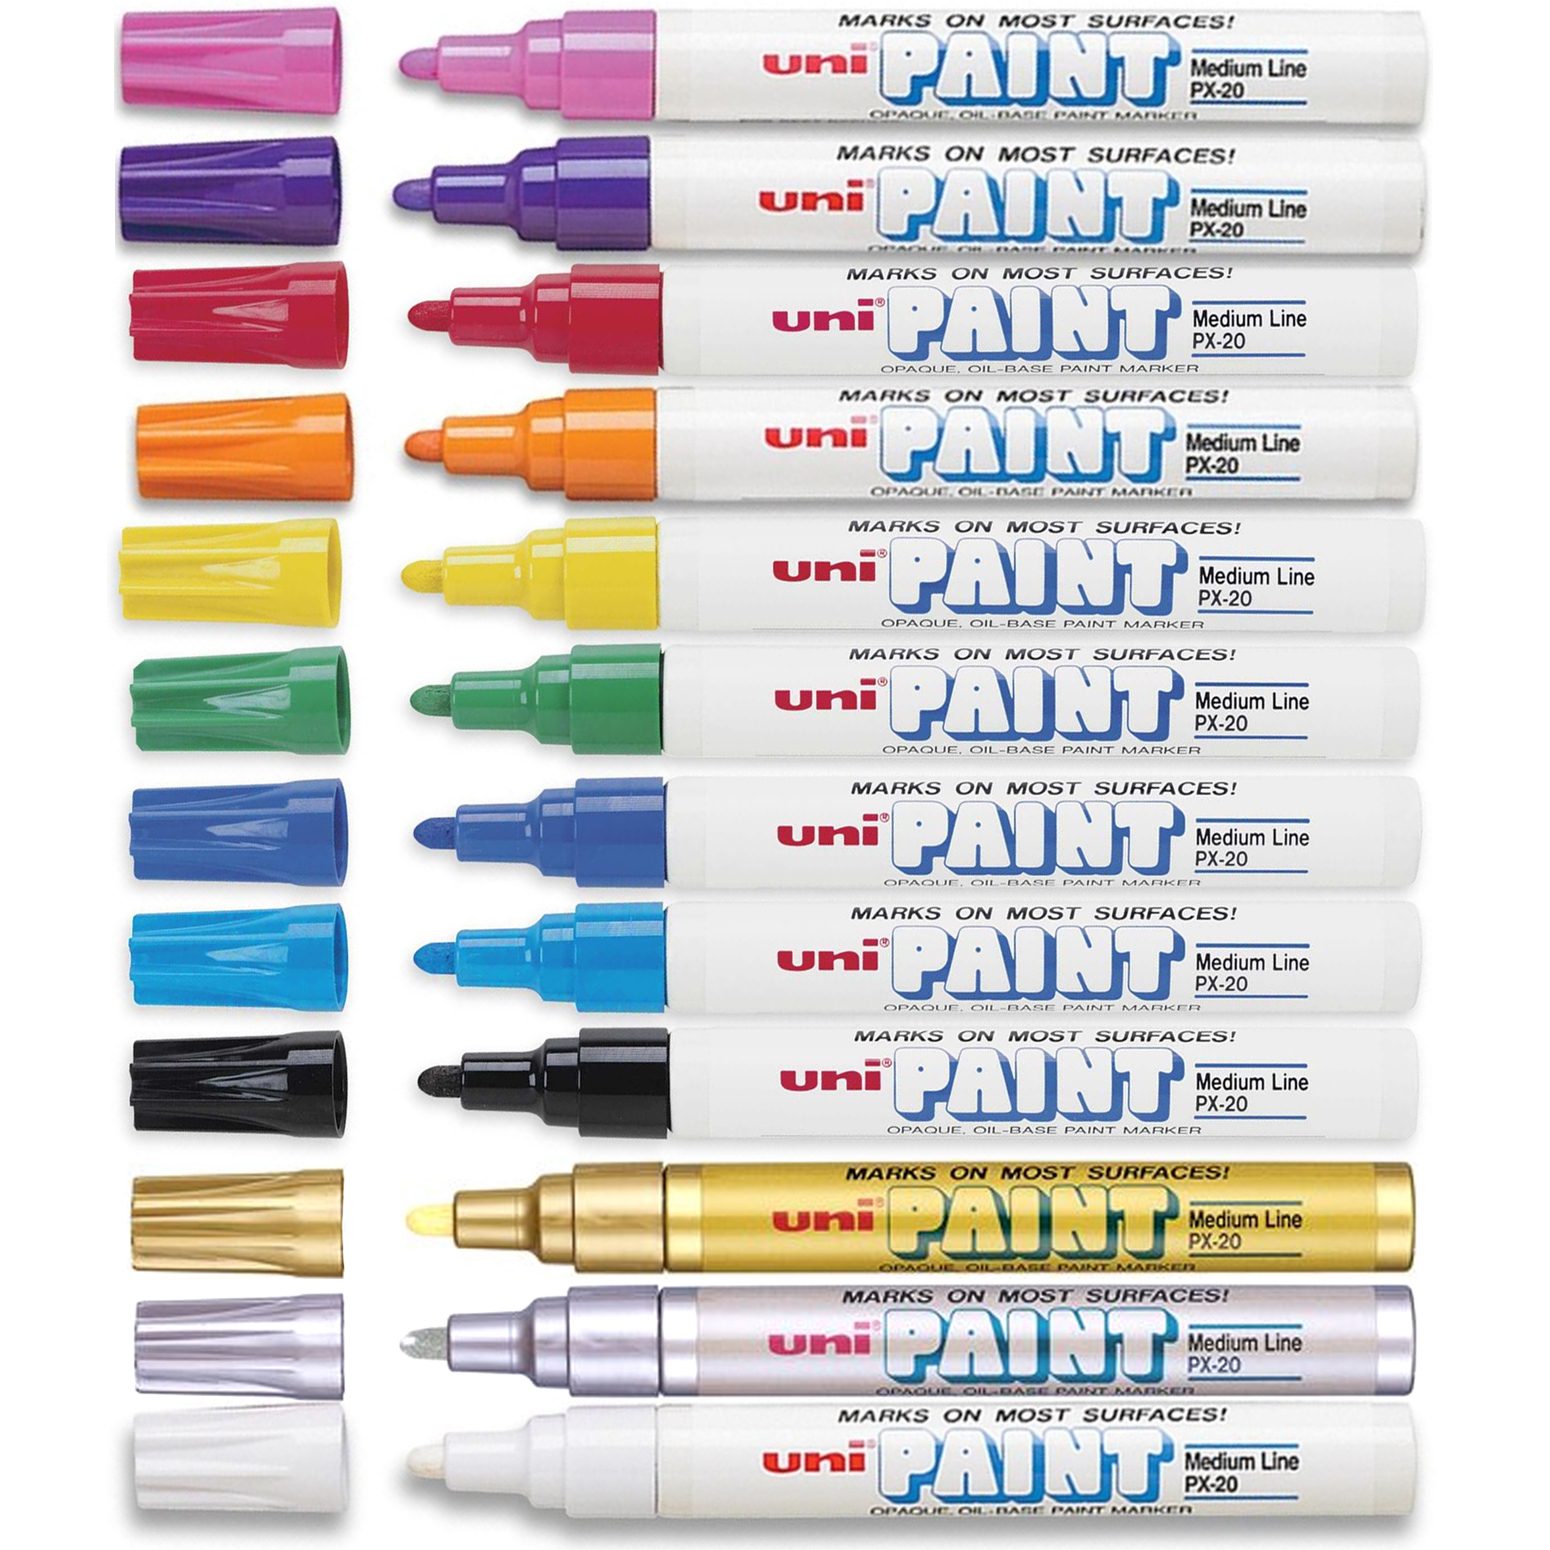 Uni Paint Markers